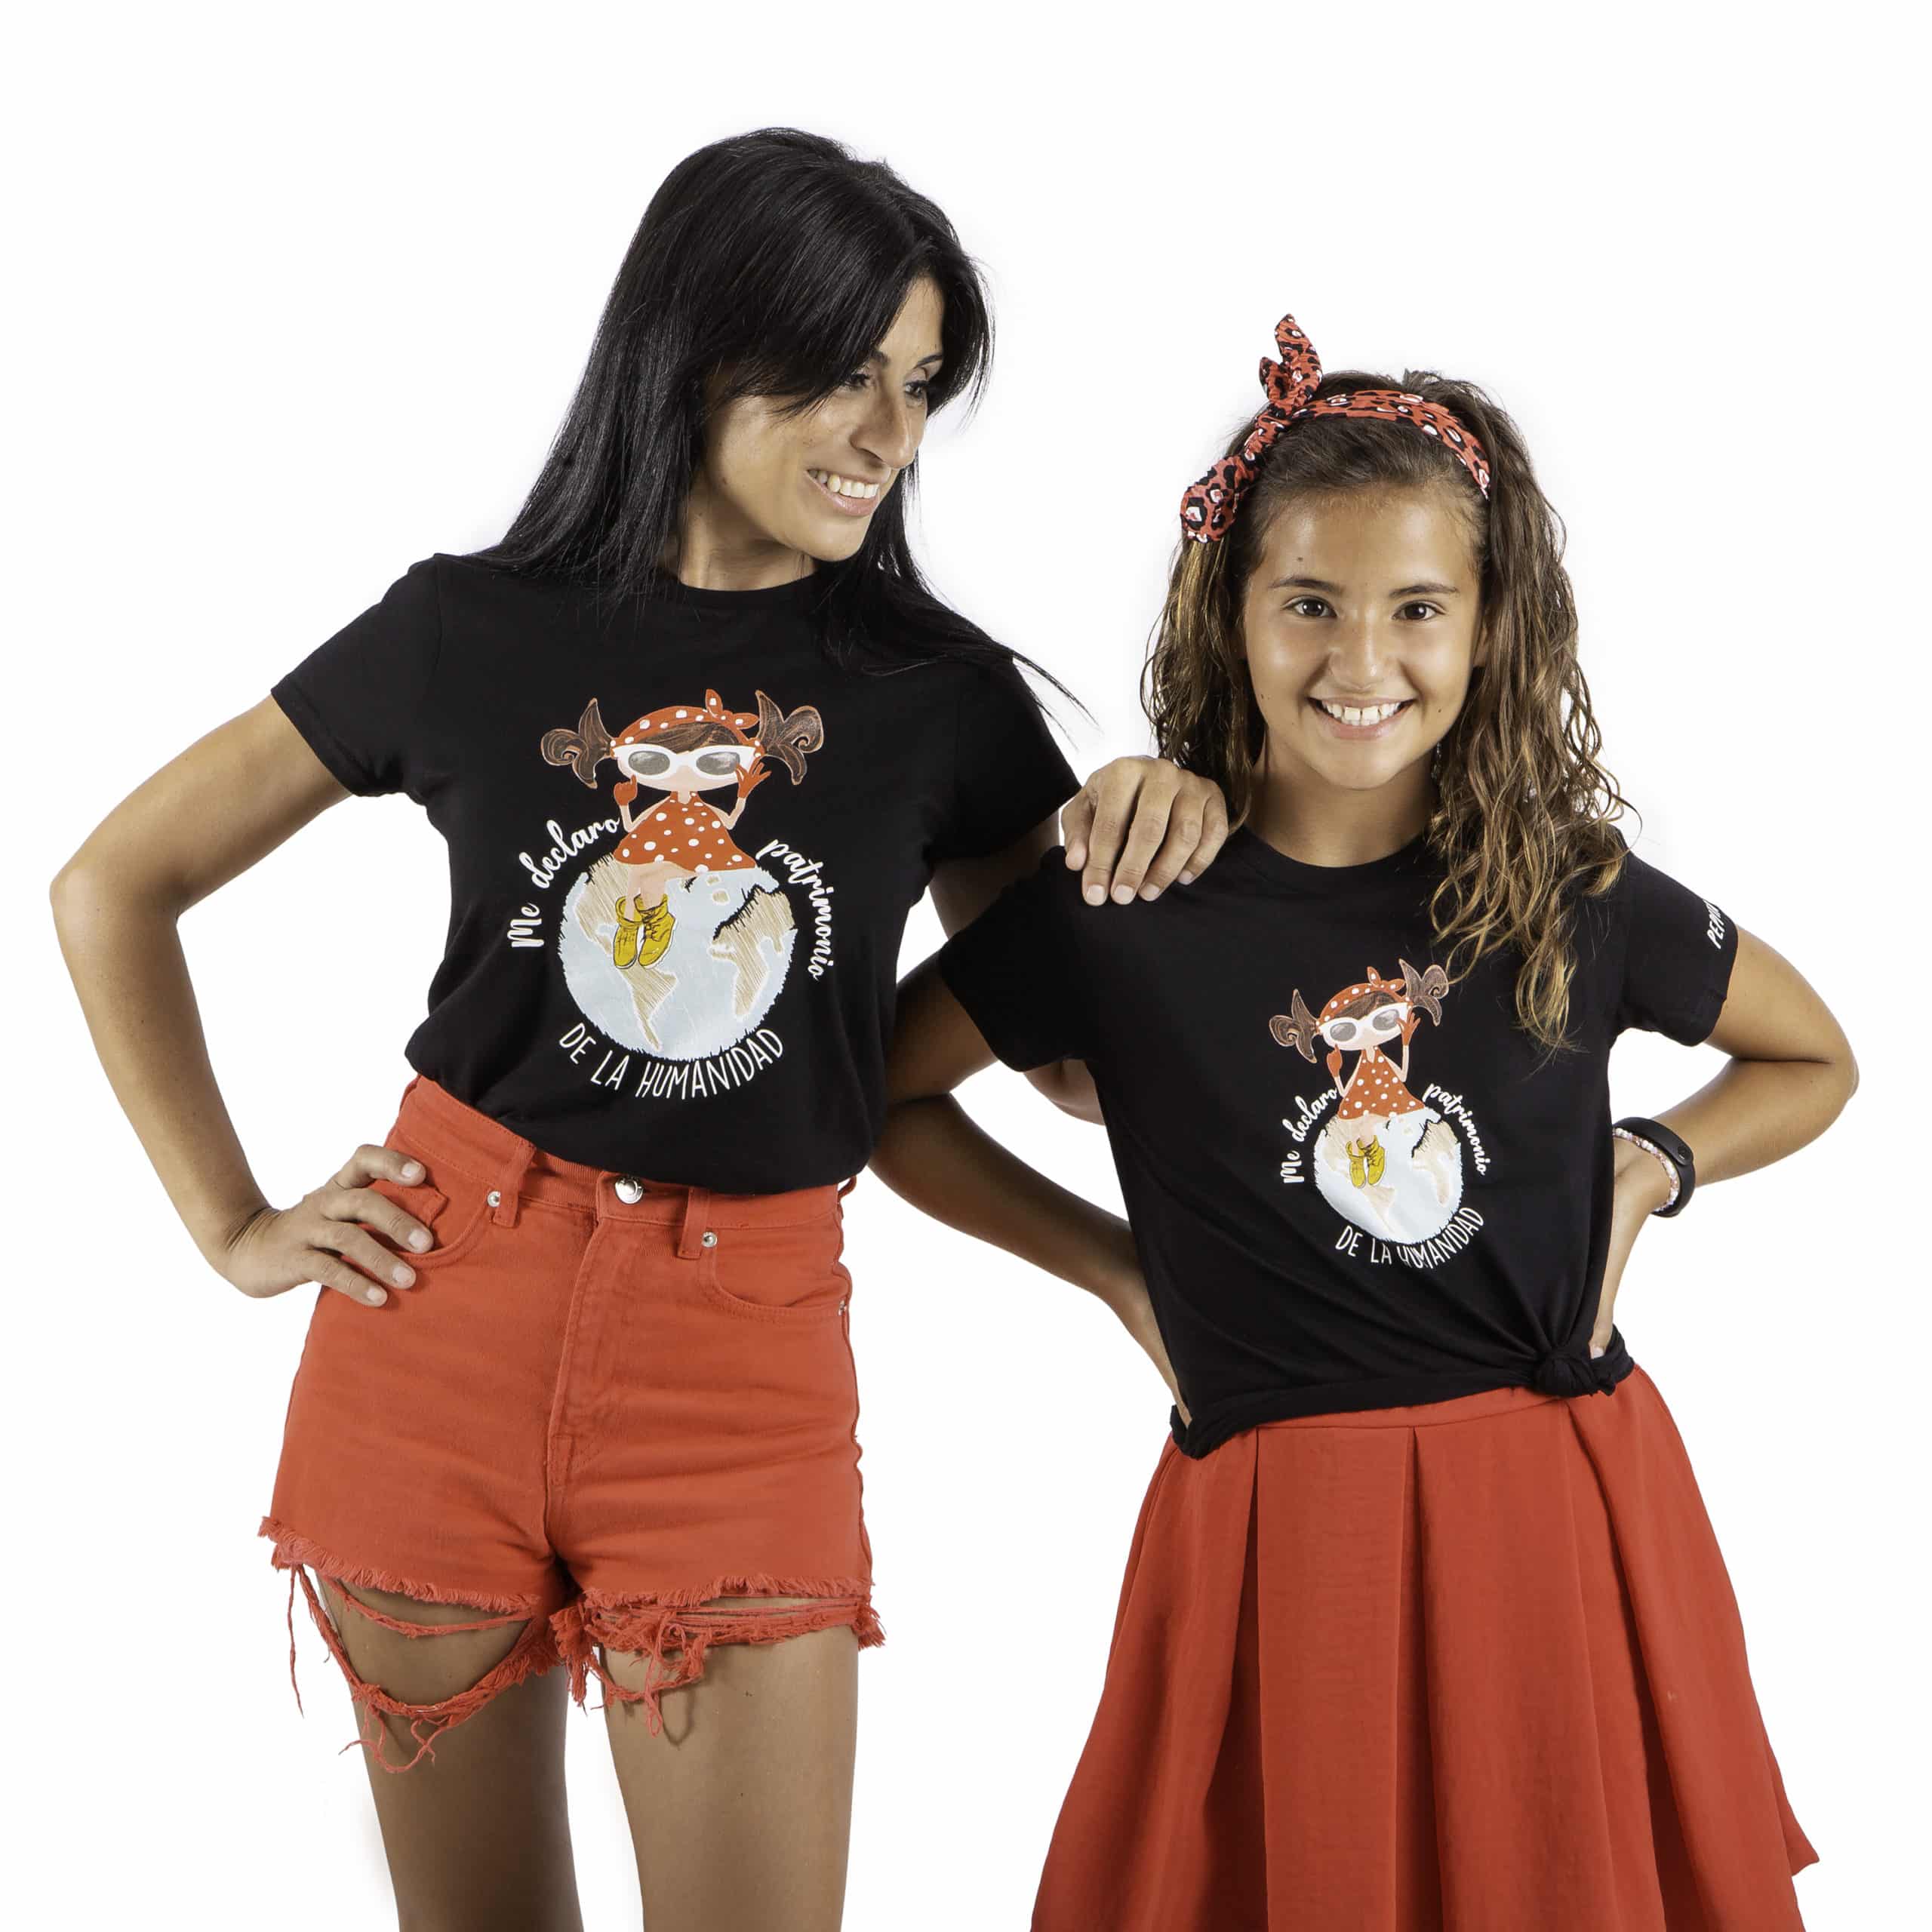 Camiseta de algodón orgánico de la marca Pepita Viajera en color negro para aquellos que se declaran Patrimonio de la humanidad. Vista puesta en modelos chica adulta y niña